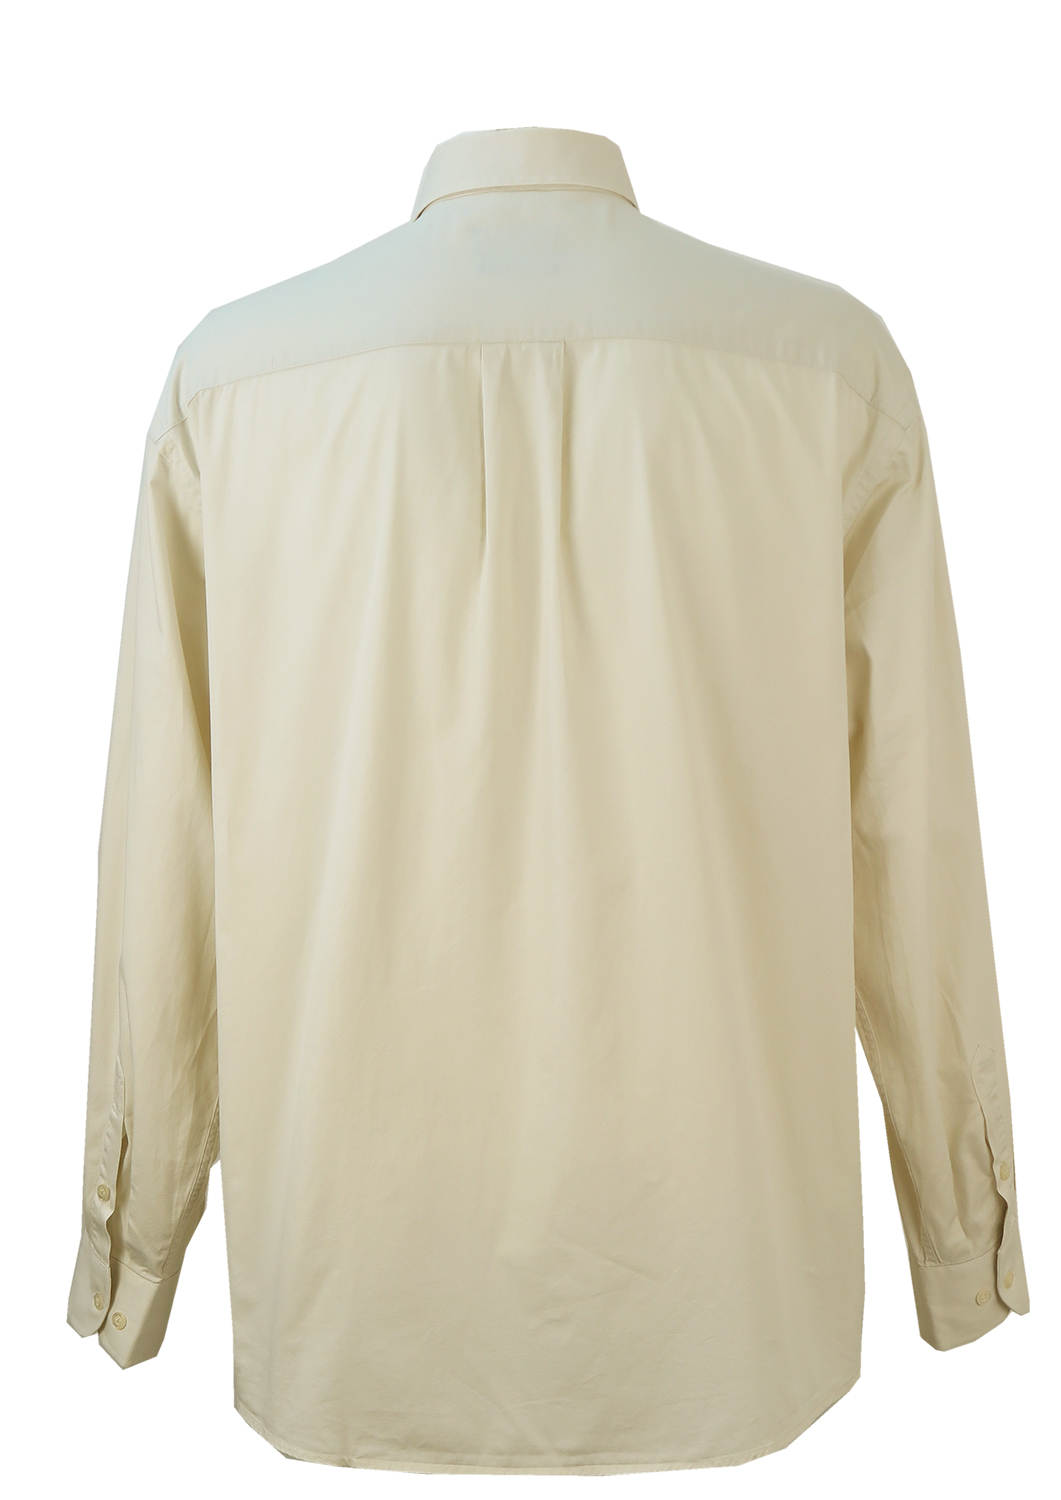 Ralph Lauren Light Grey Cotton Shirt - XXL/XXXL | Reign Vintage